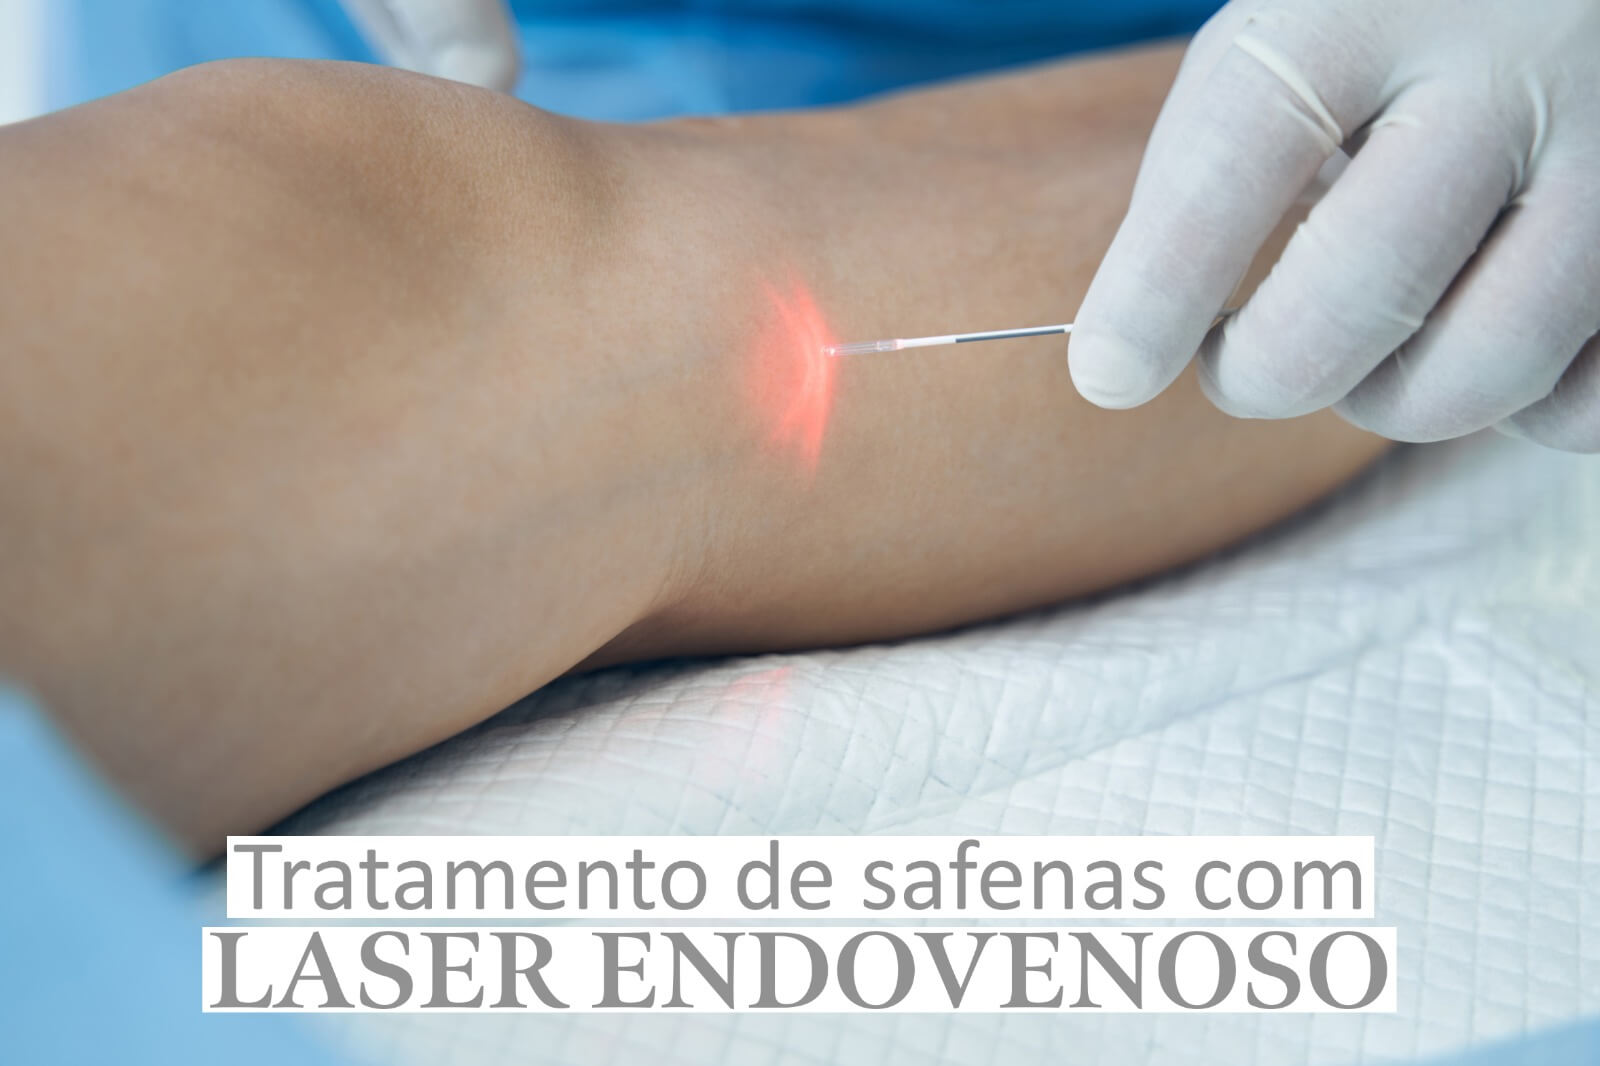 Tratamento de safenas com laser endovenoso